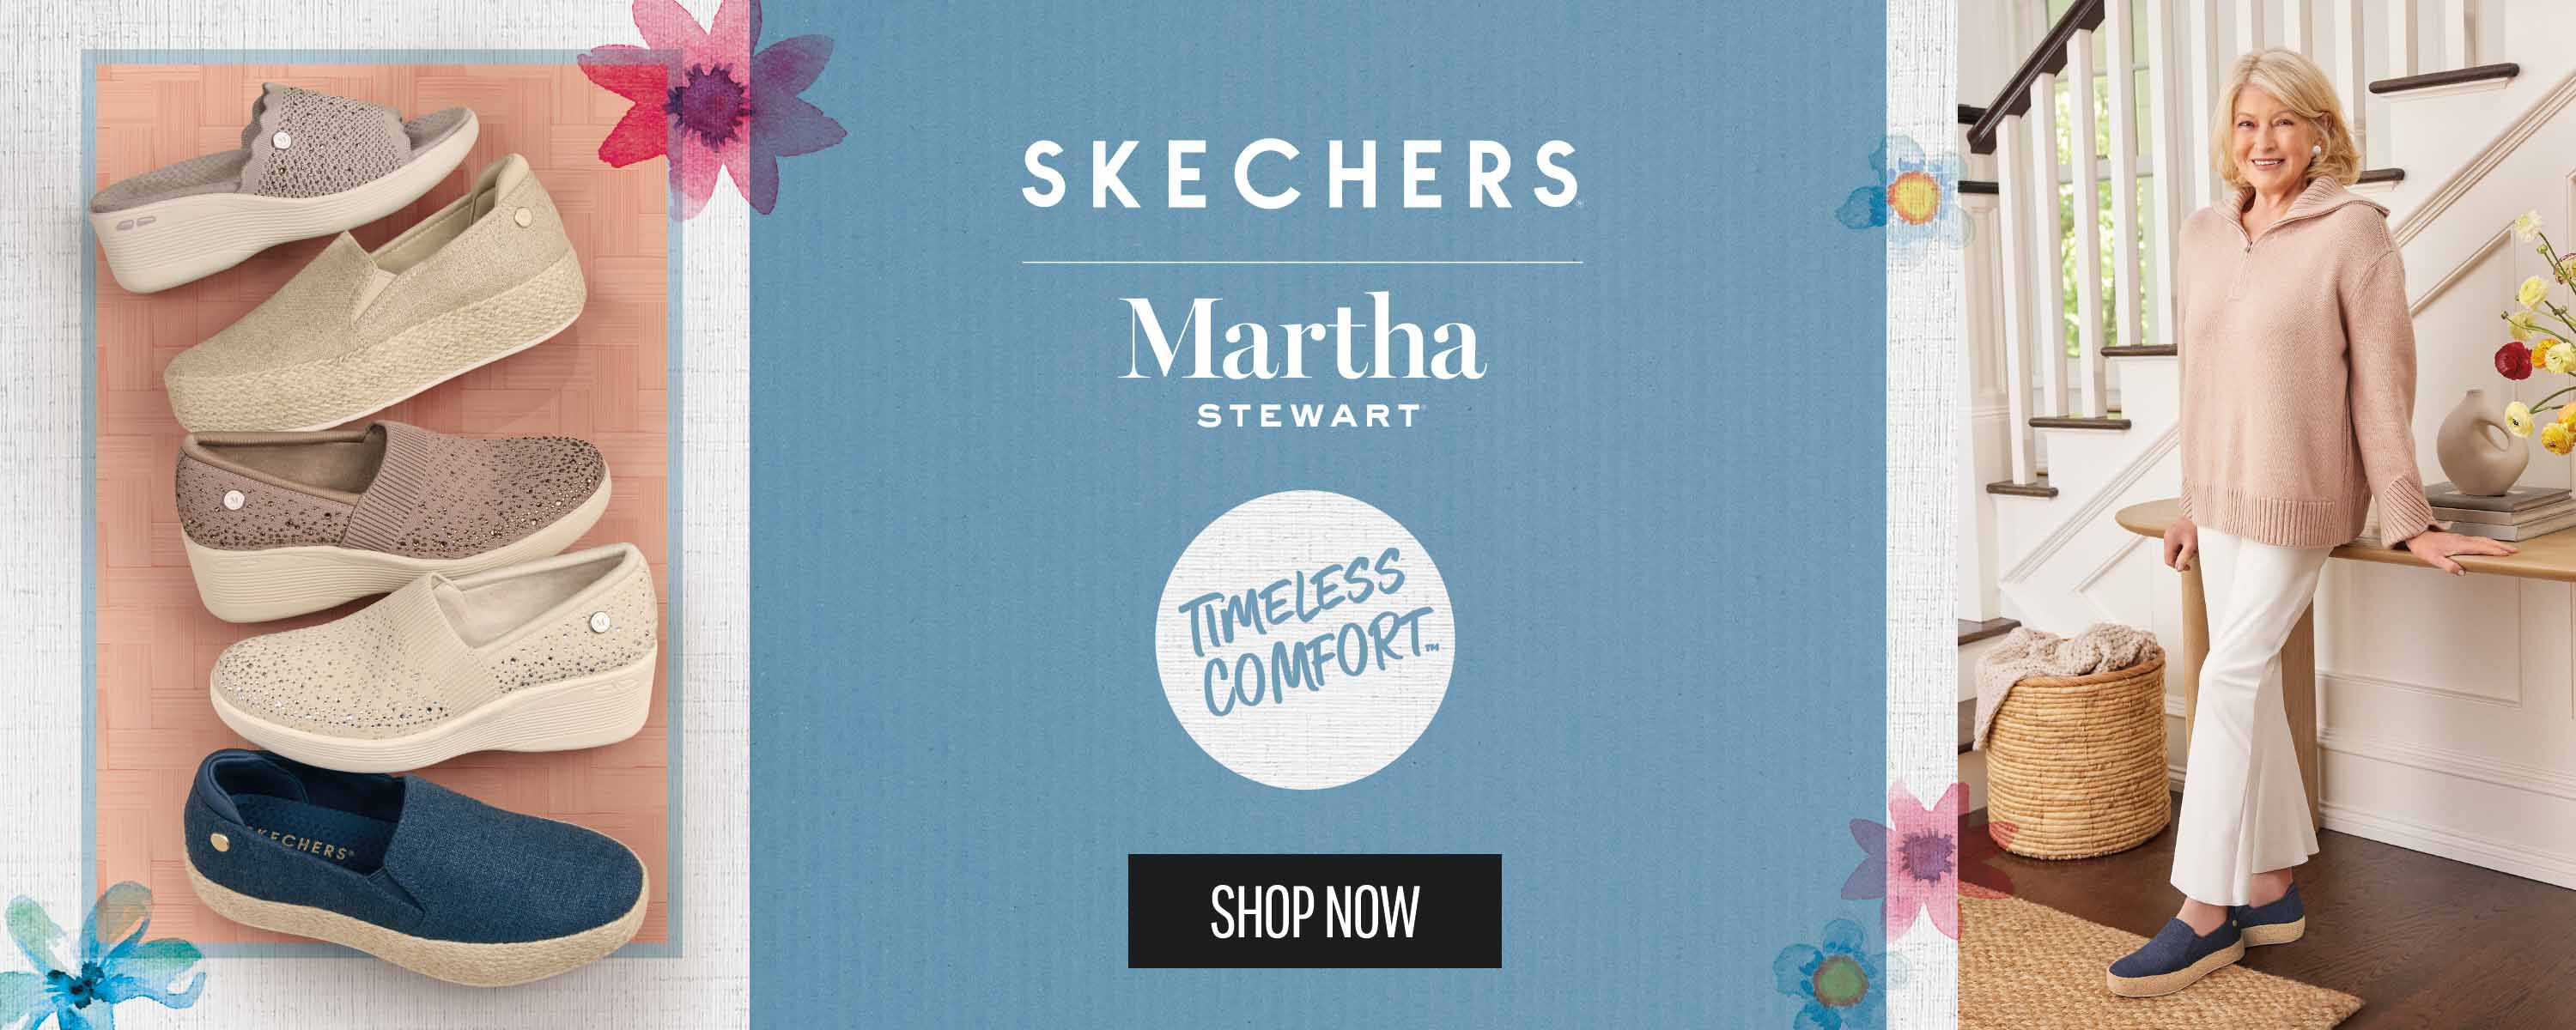 SKECHERS Martha Stewart - Shop Now